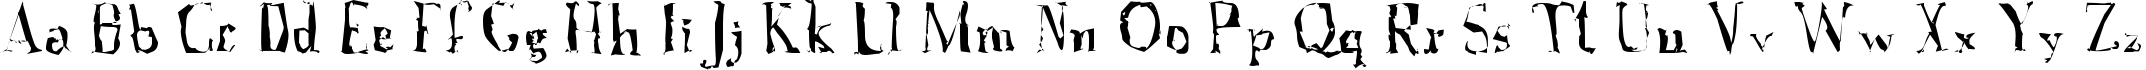 Пример написания английского алфавита шрифтом A Font with Serifs. Disordered